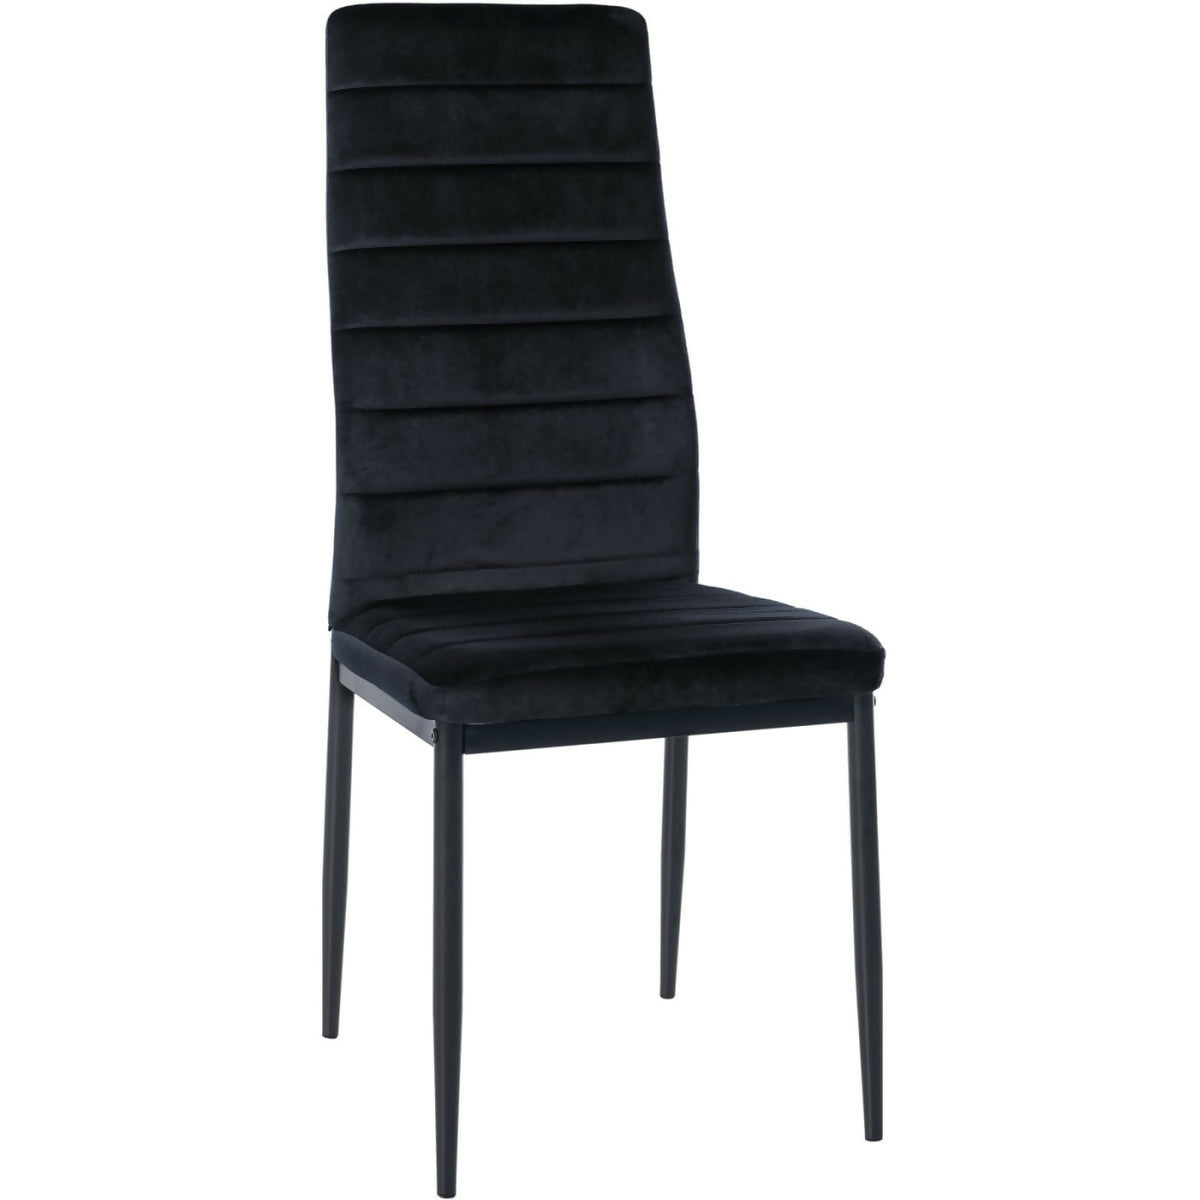 Mayfair Velvet Chair - Black